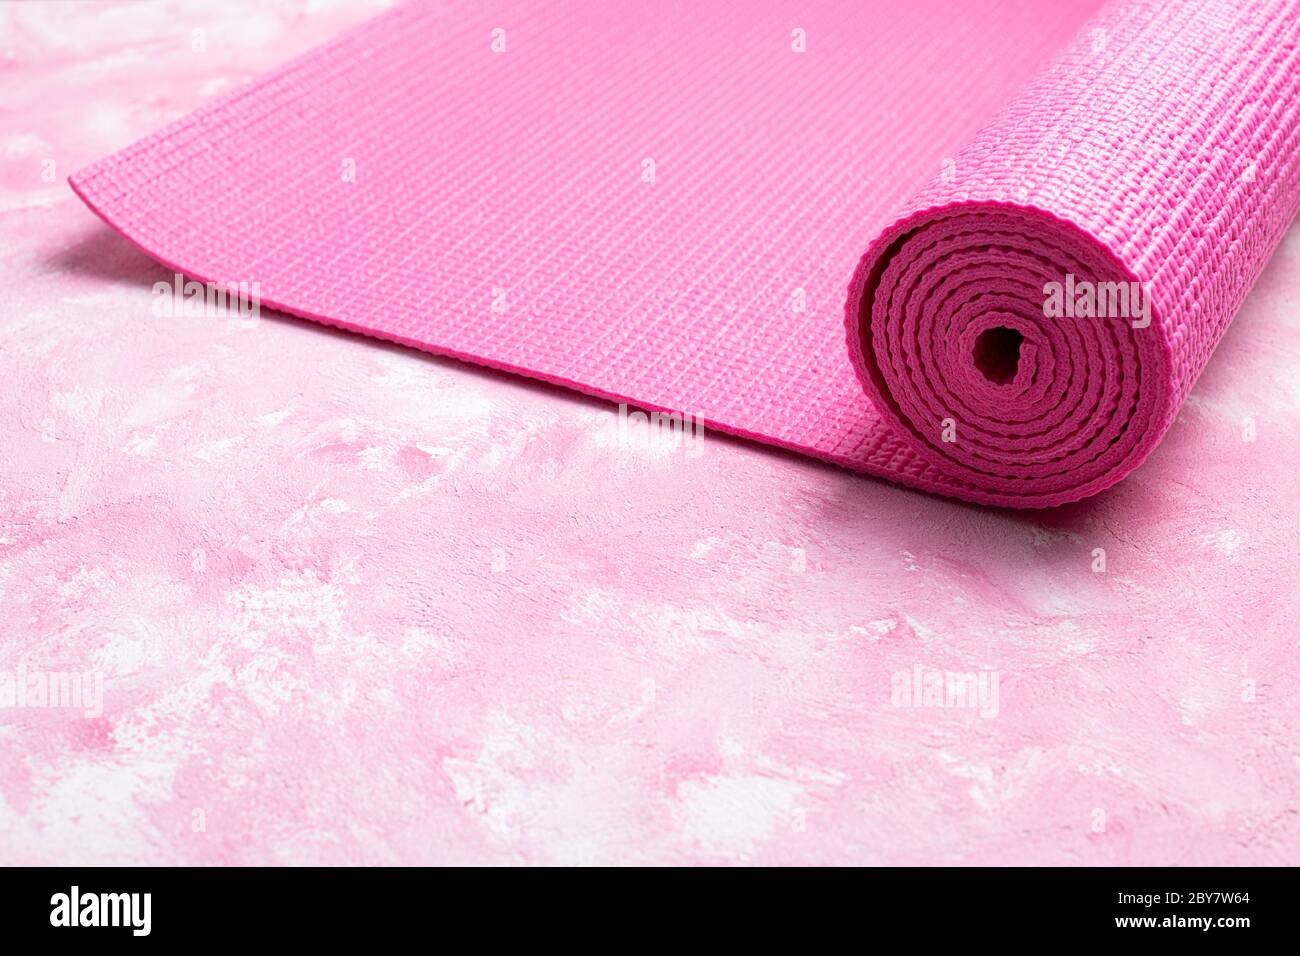 Tappetino yoga su sfondo rosa. Attrezzature per yoga. Concetto stile di vita sano, sport, meditazioni e relax. Vista dall'alto, spazio di copia Foto Stock